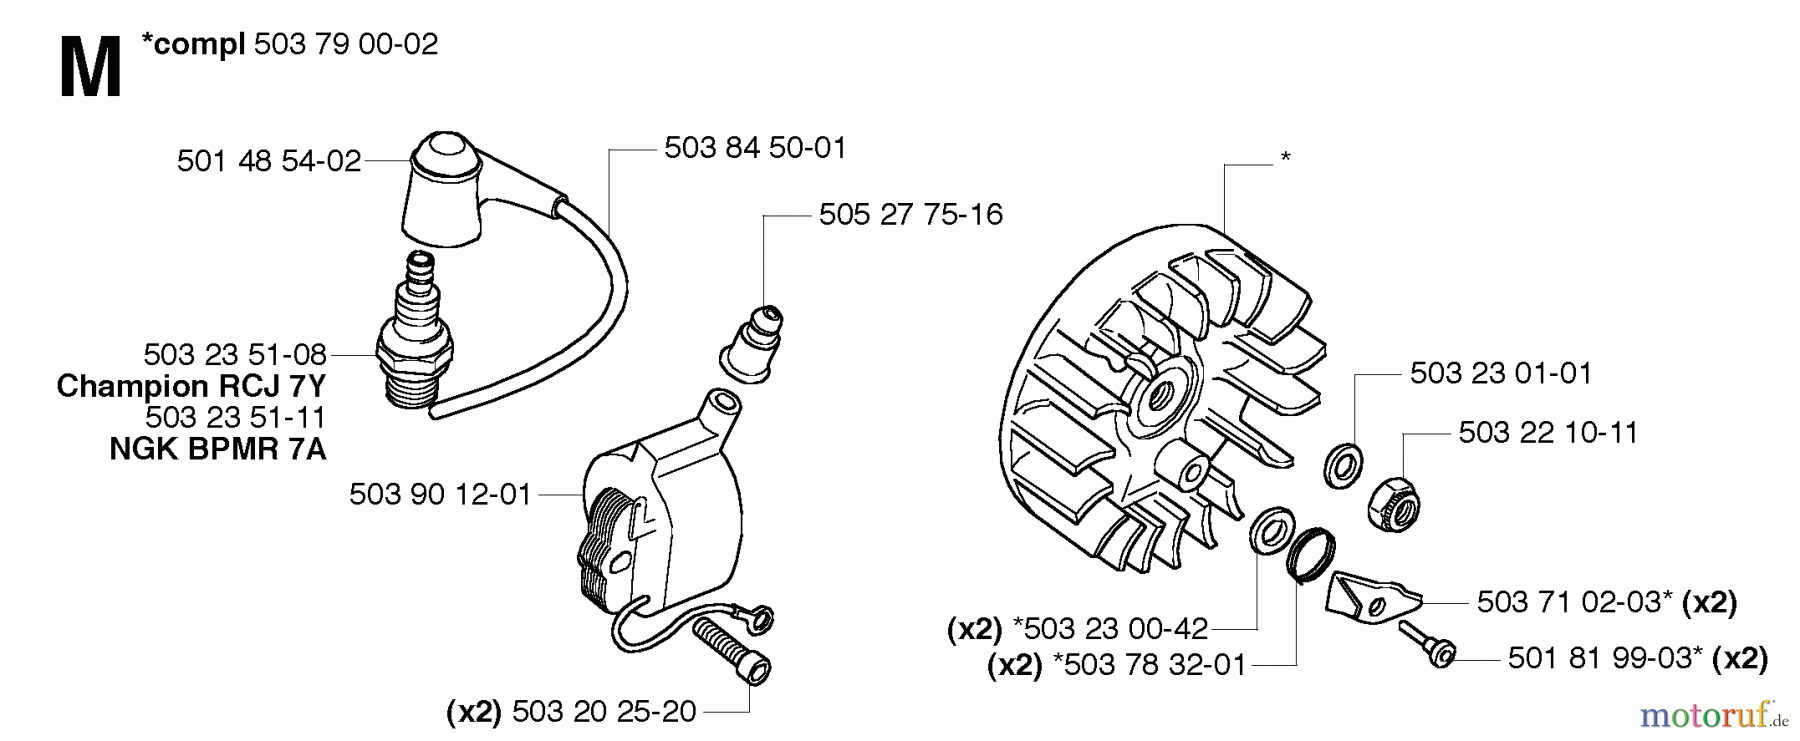  Jonsered Motorsensen, Trimmer GR50 EPA - Jonsered String/Brush Trimmer (2006-01) IGNITION SYSTEM